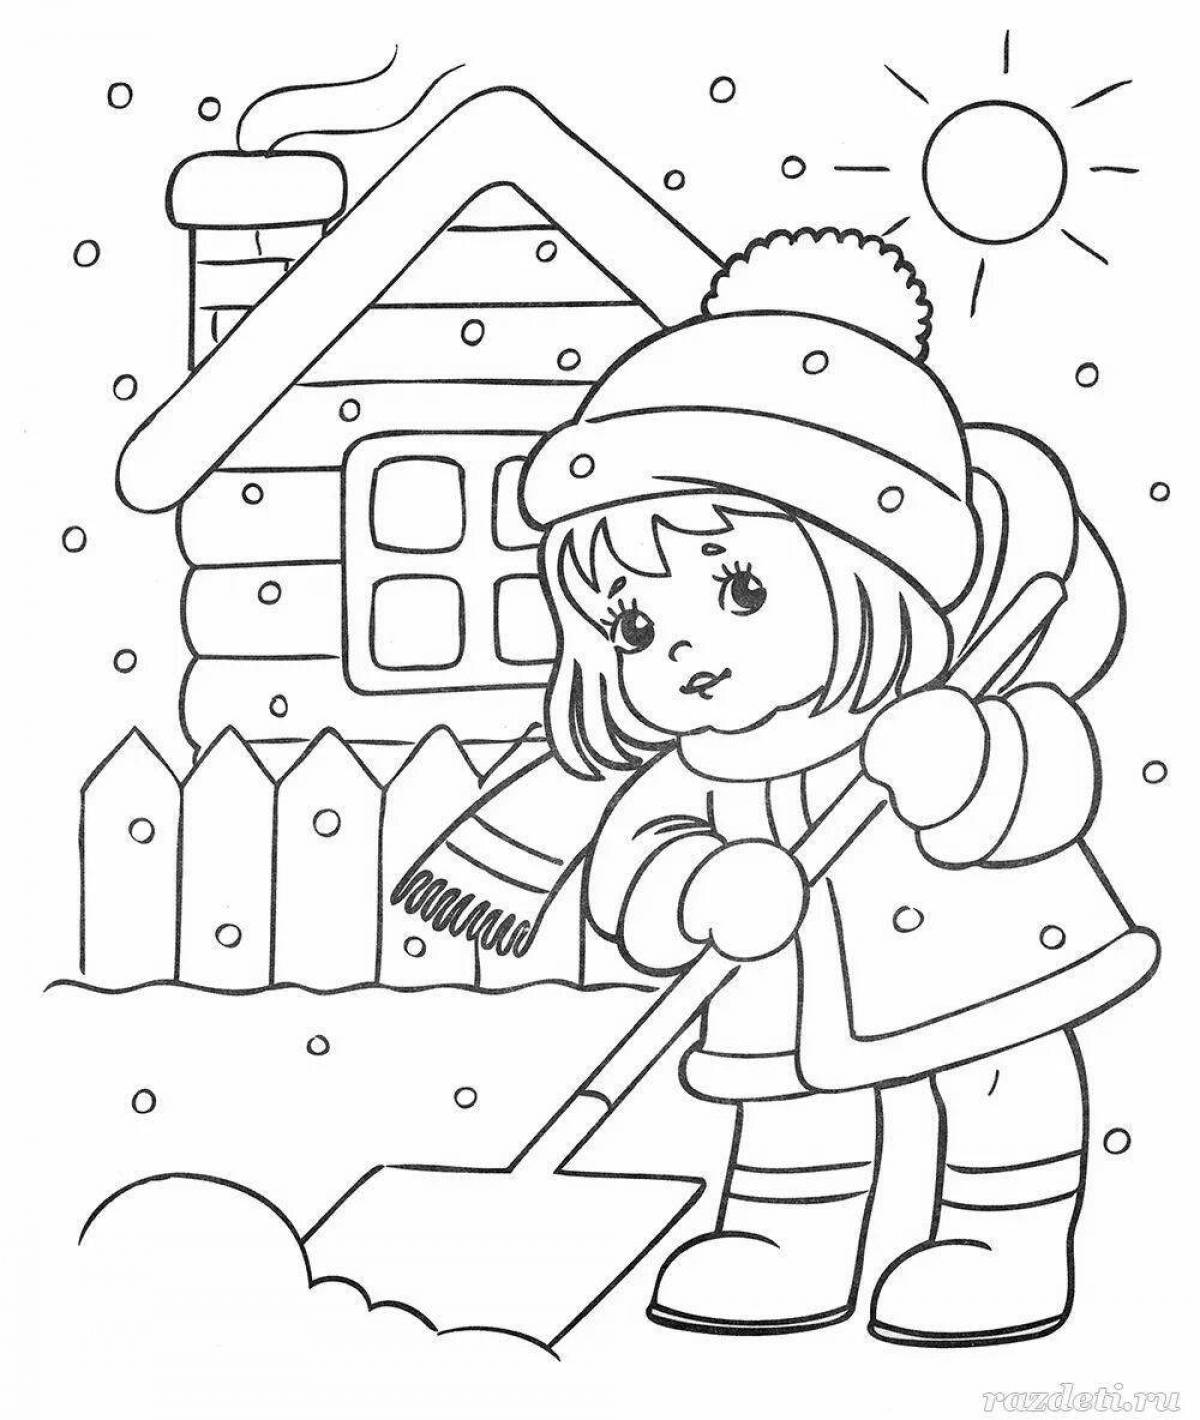 Сказочная раскраска для детей 3 лет зима